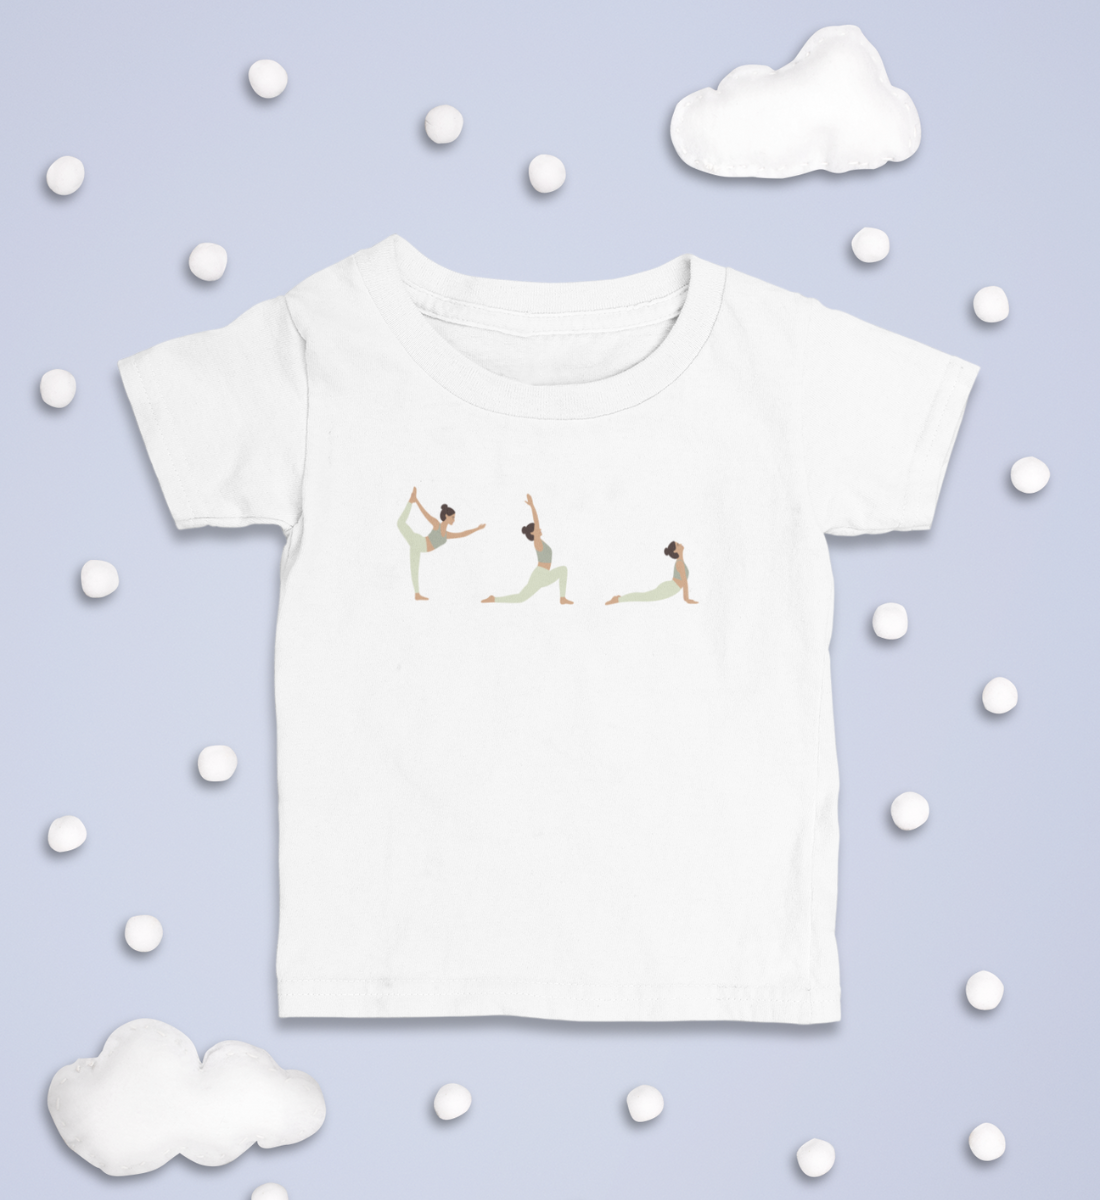 yoga posen l kinder yoga shirt l kinder yoga bekleidung l nachhaltige mode für kinder l kinder mode online shoppen